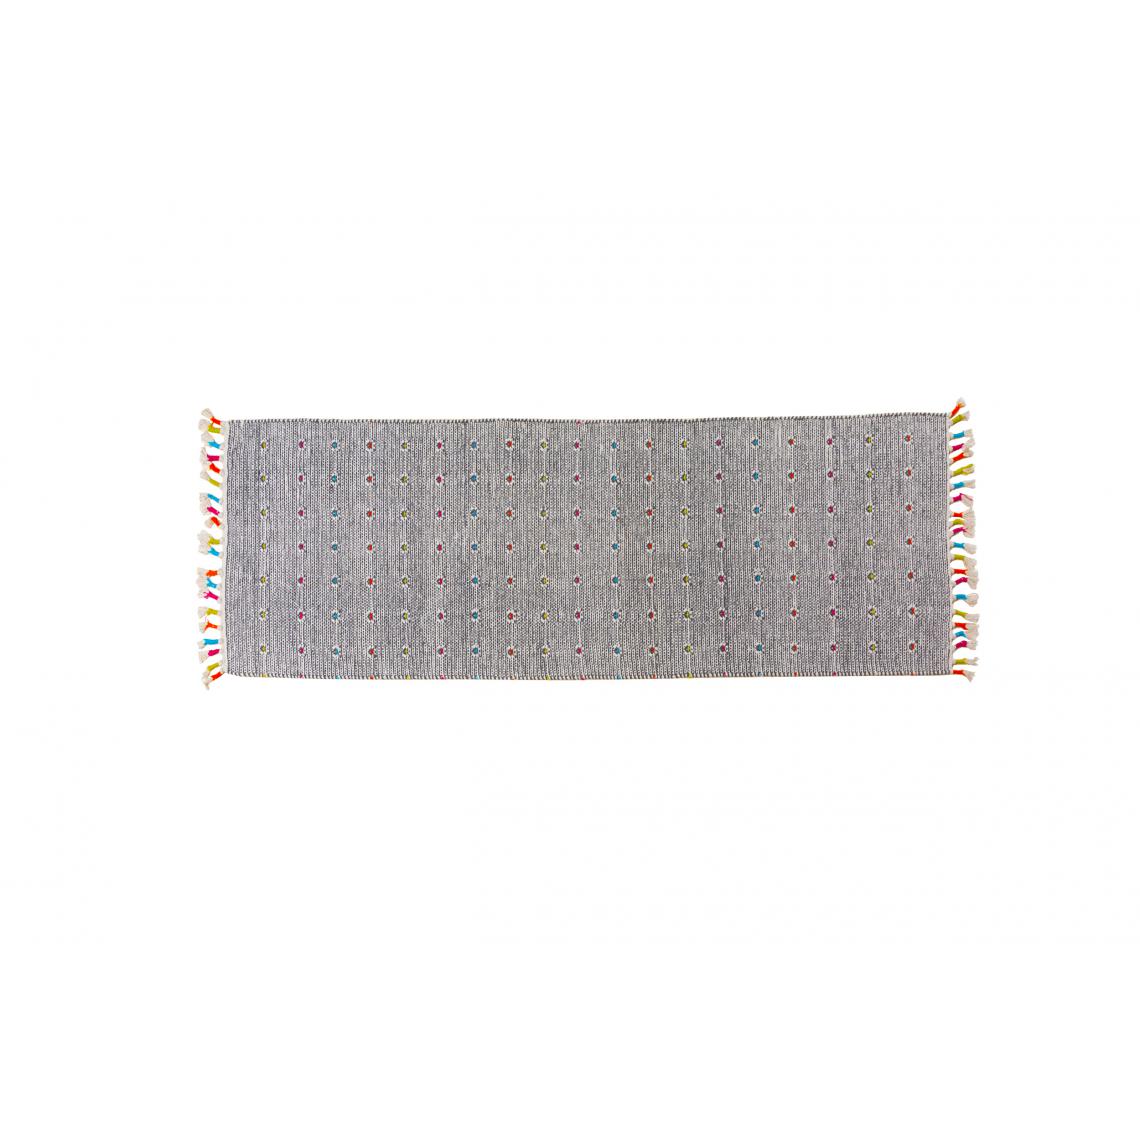 Alter - Tapis Texas moderne, style kilim, 100% coton, gris, 180x60cm - Tapis